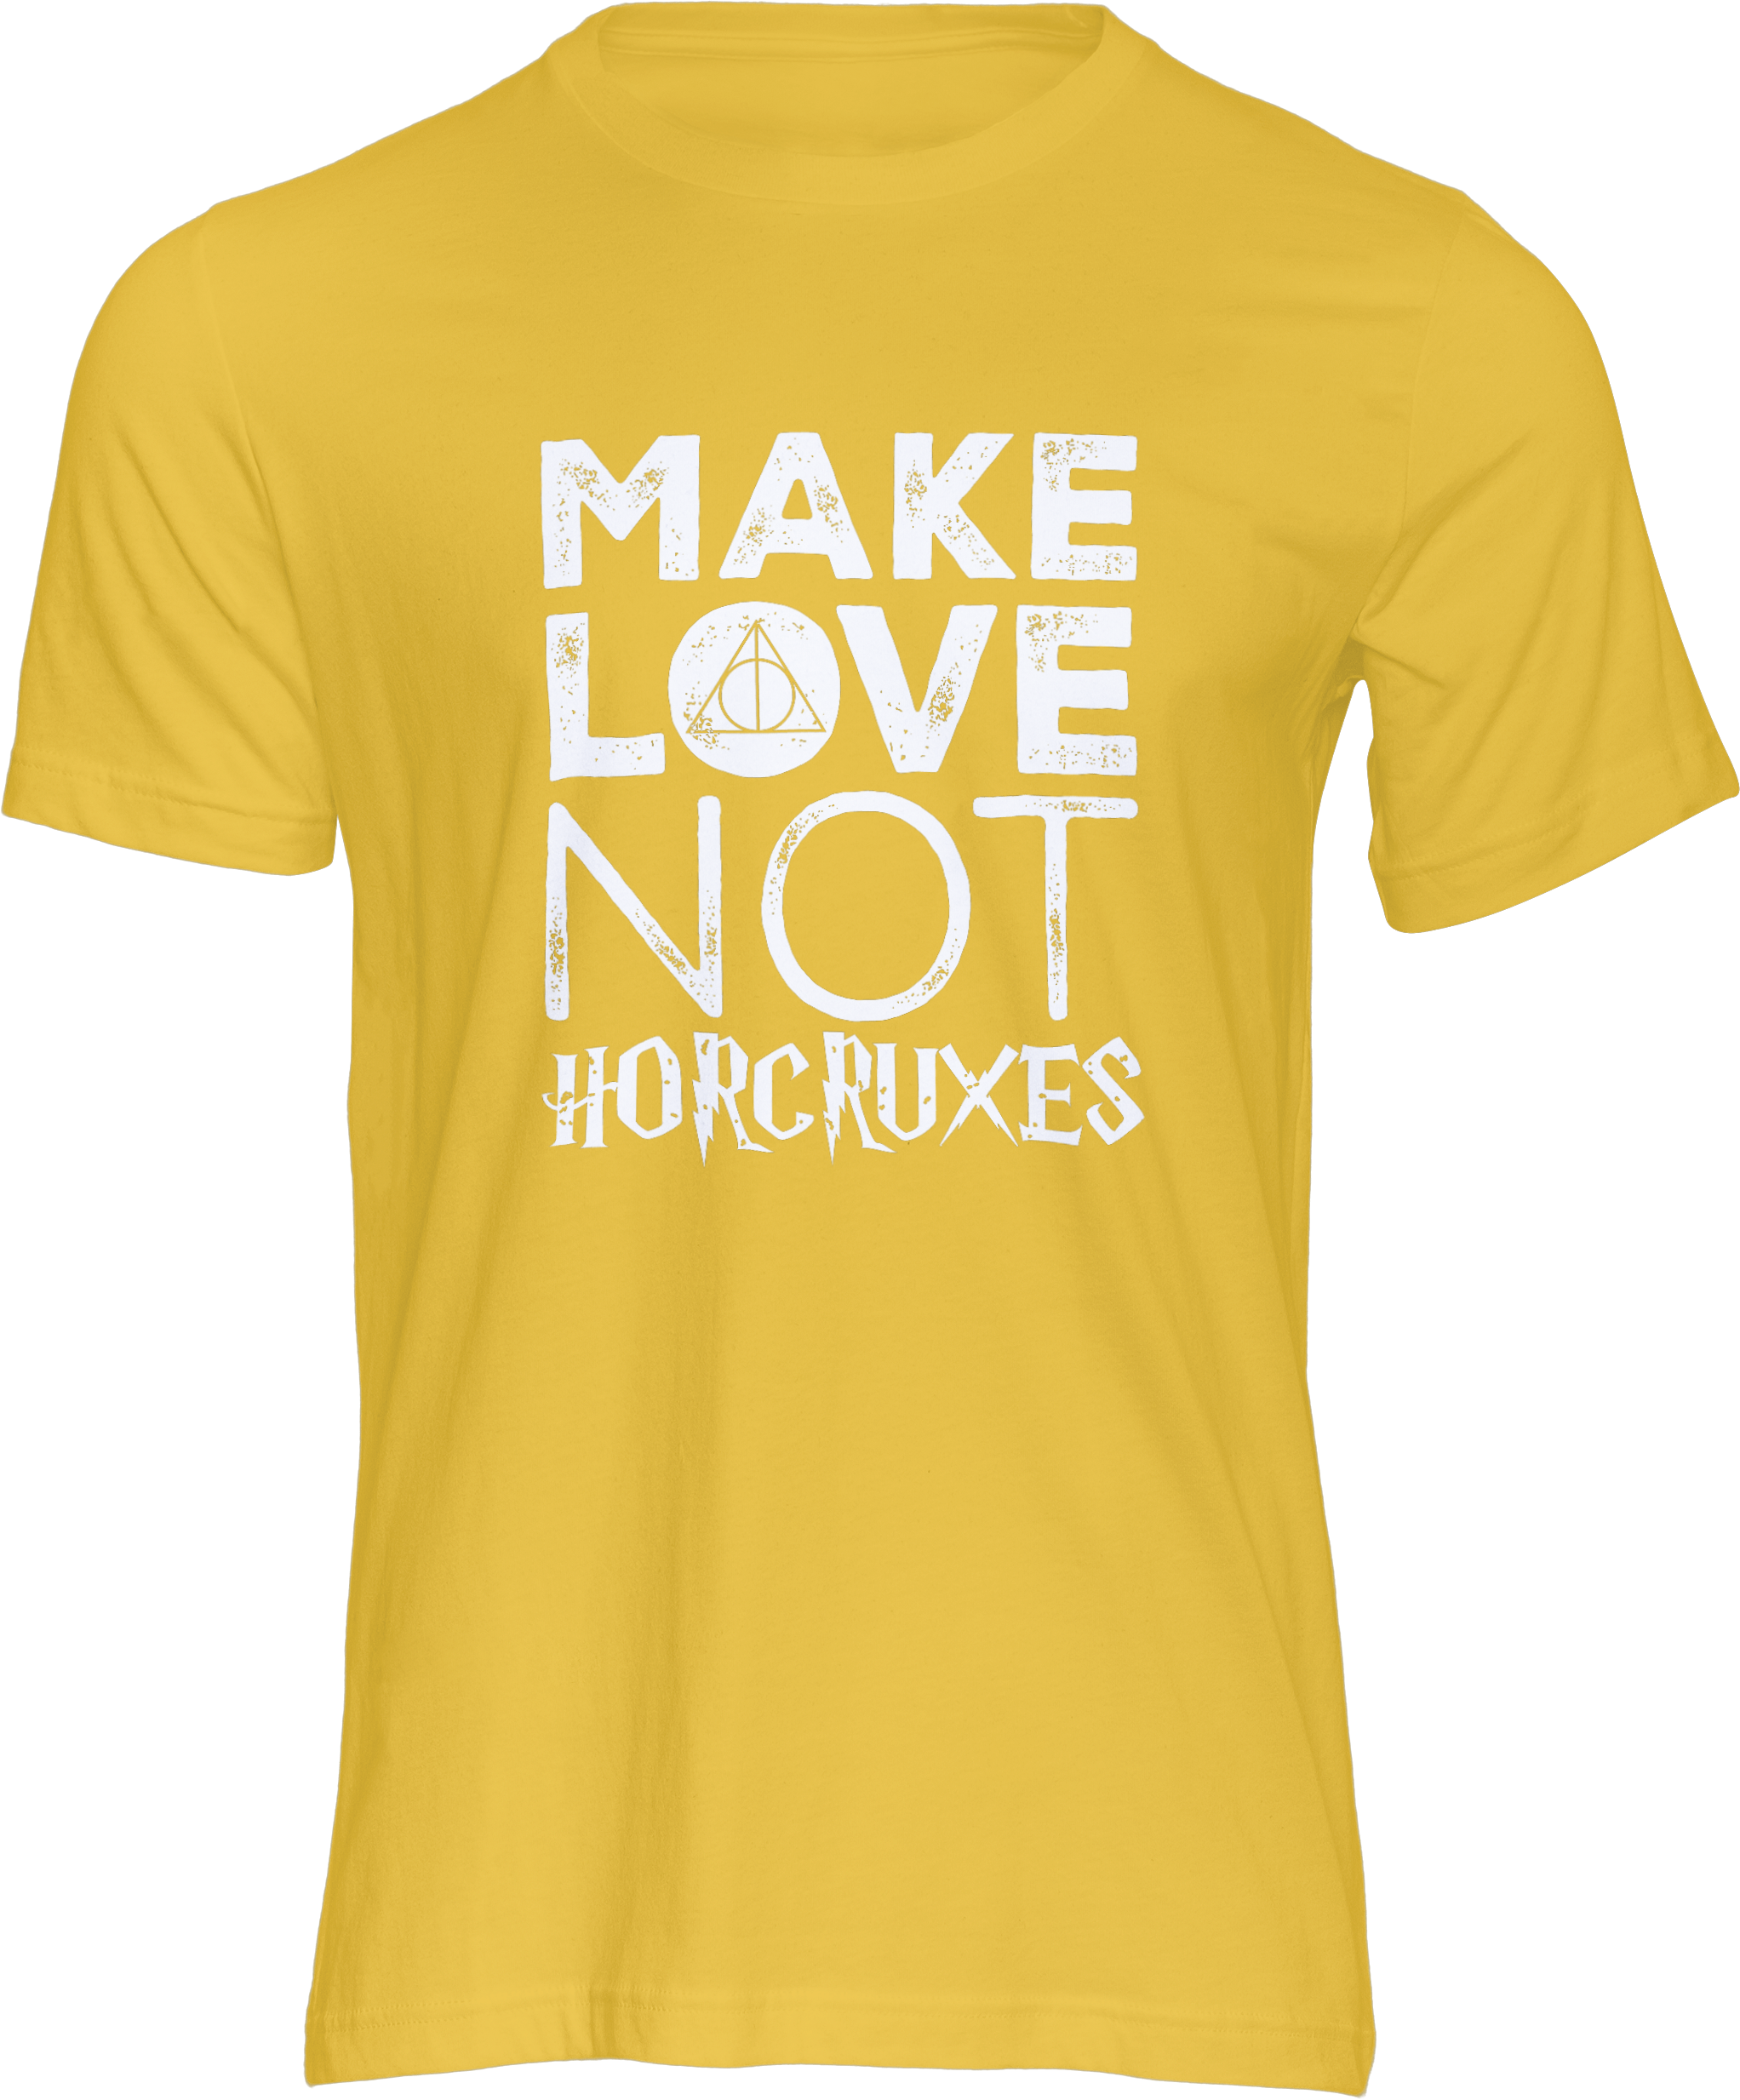 Motiv-Shirt – Make Love Not Horcruxes – T-Shirt (gelb)